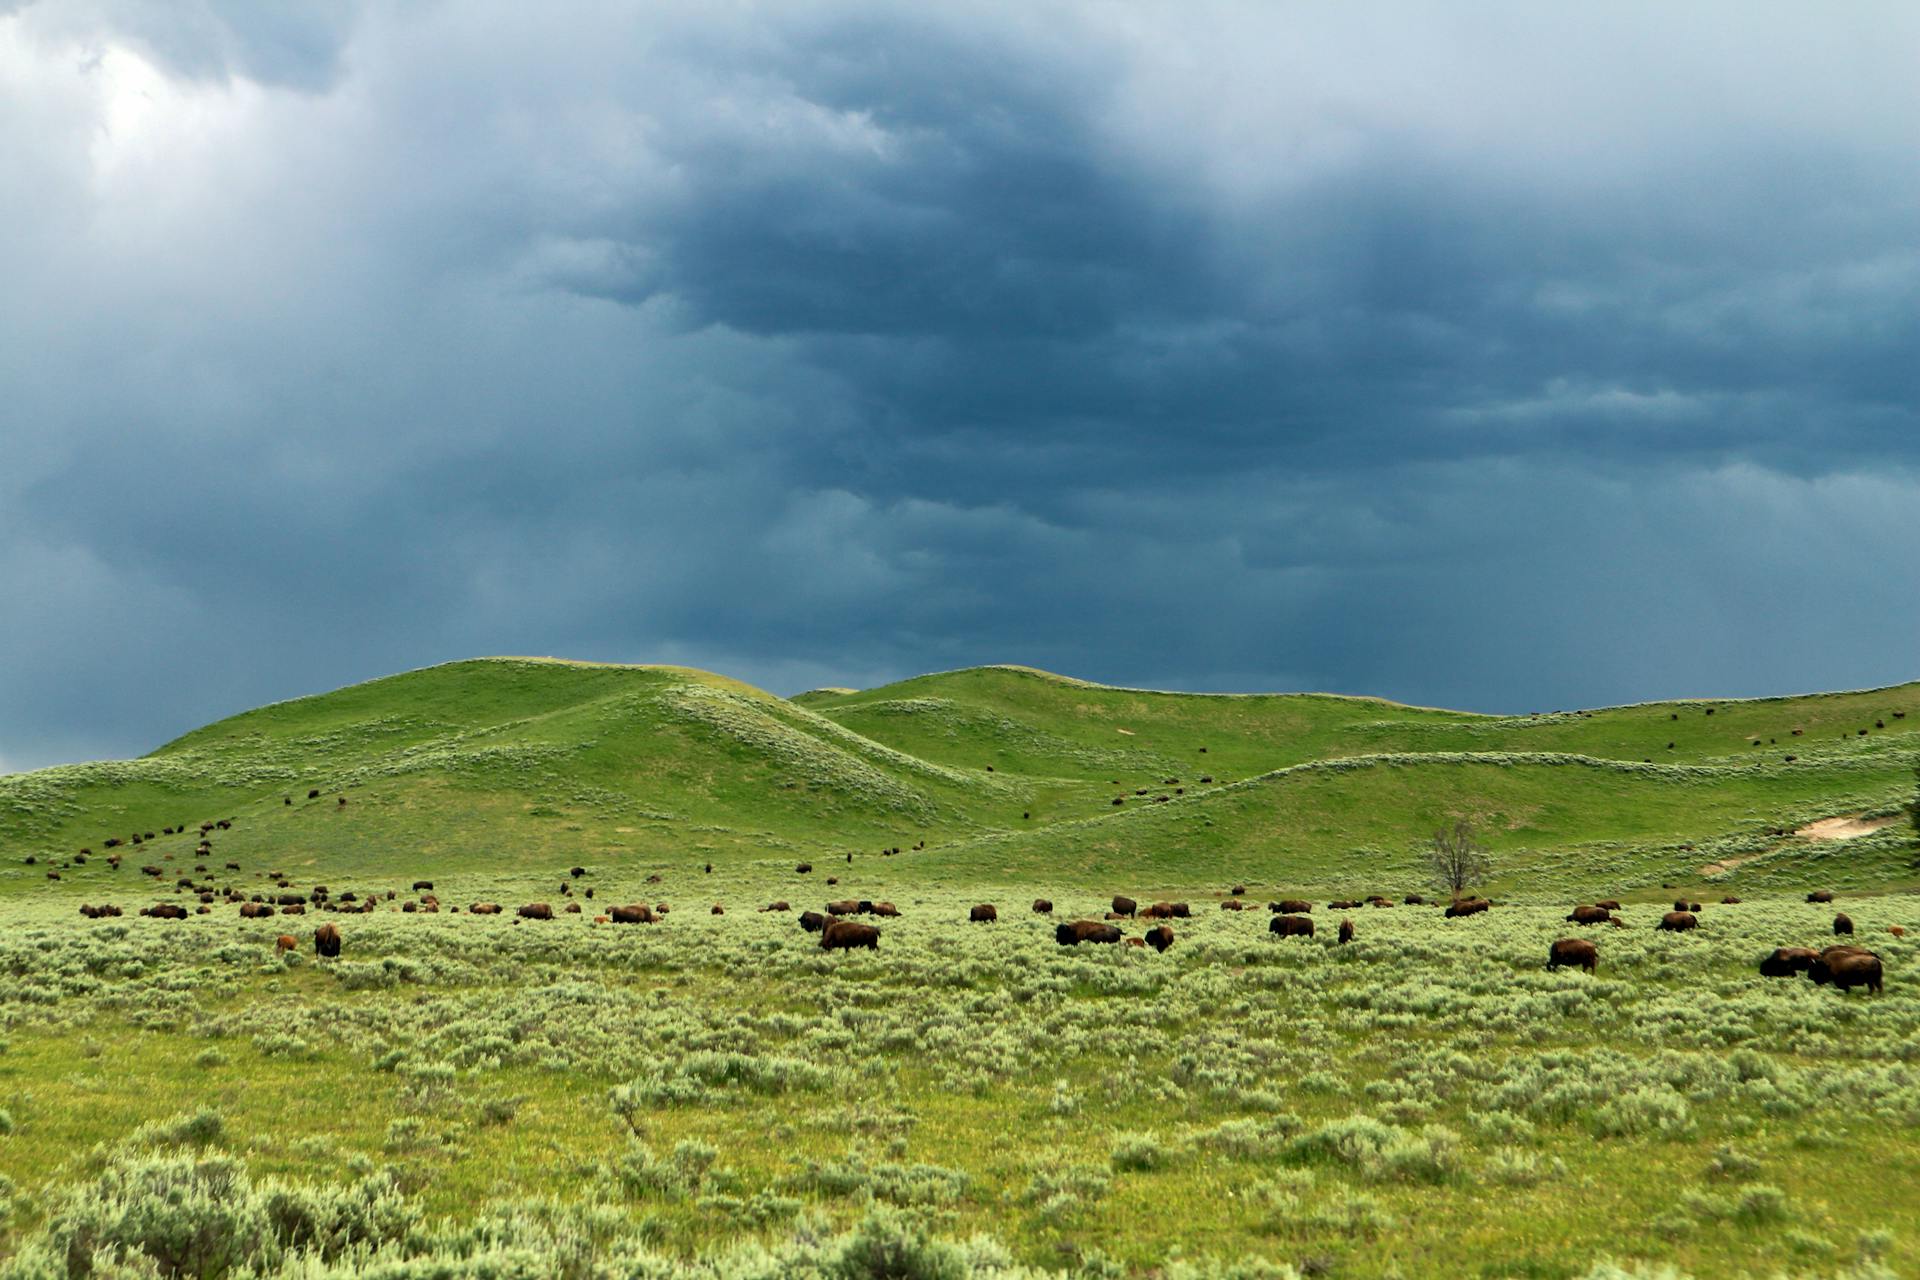 Buffalos on Green Grass Field Near Hills